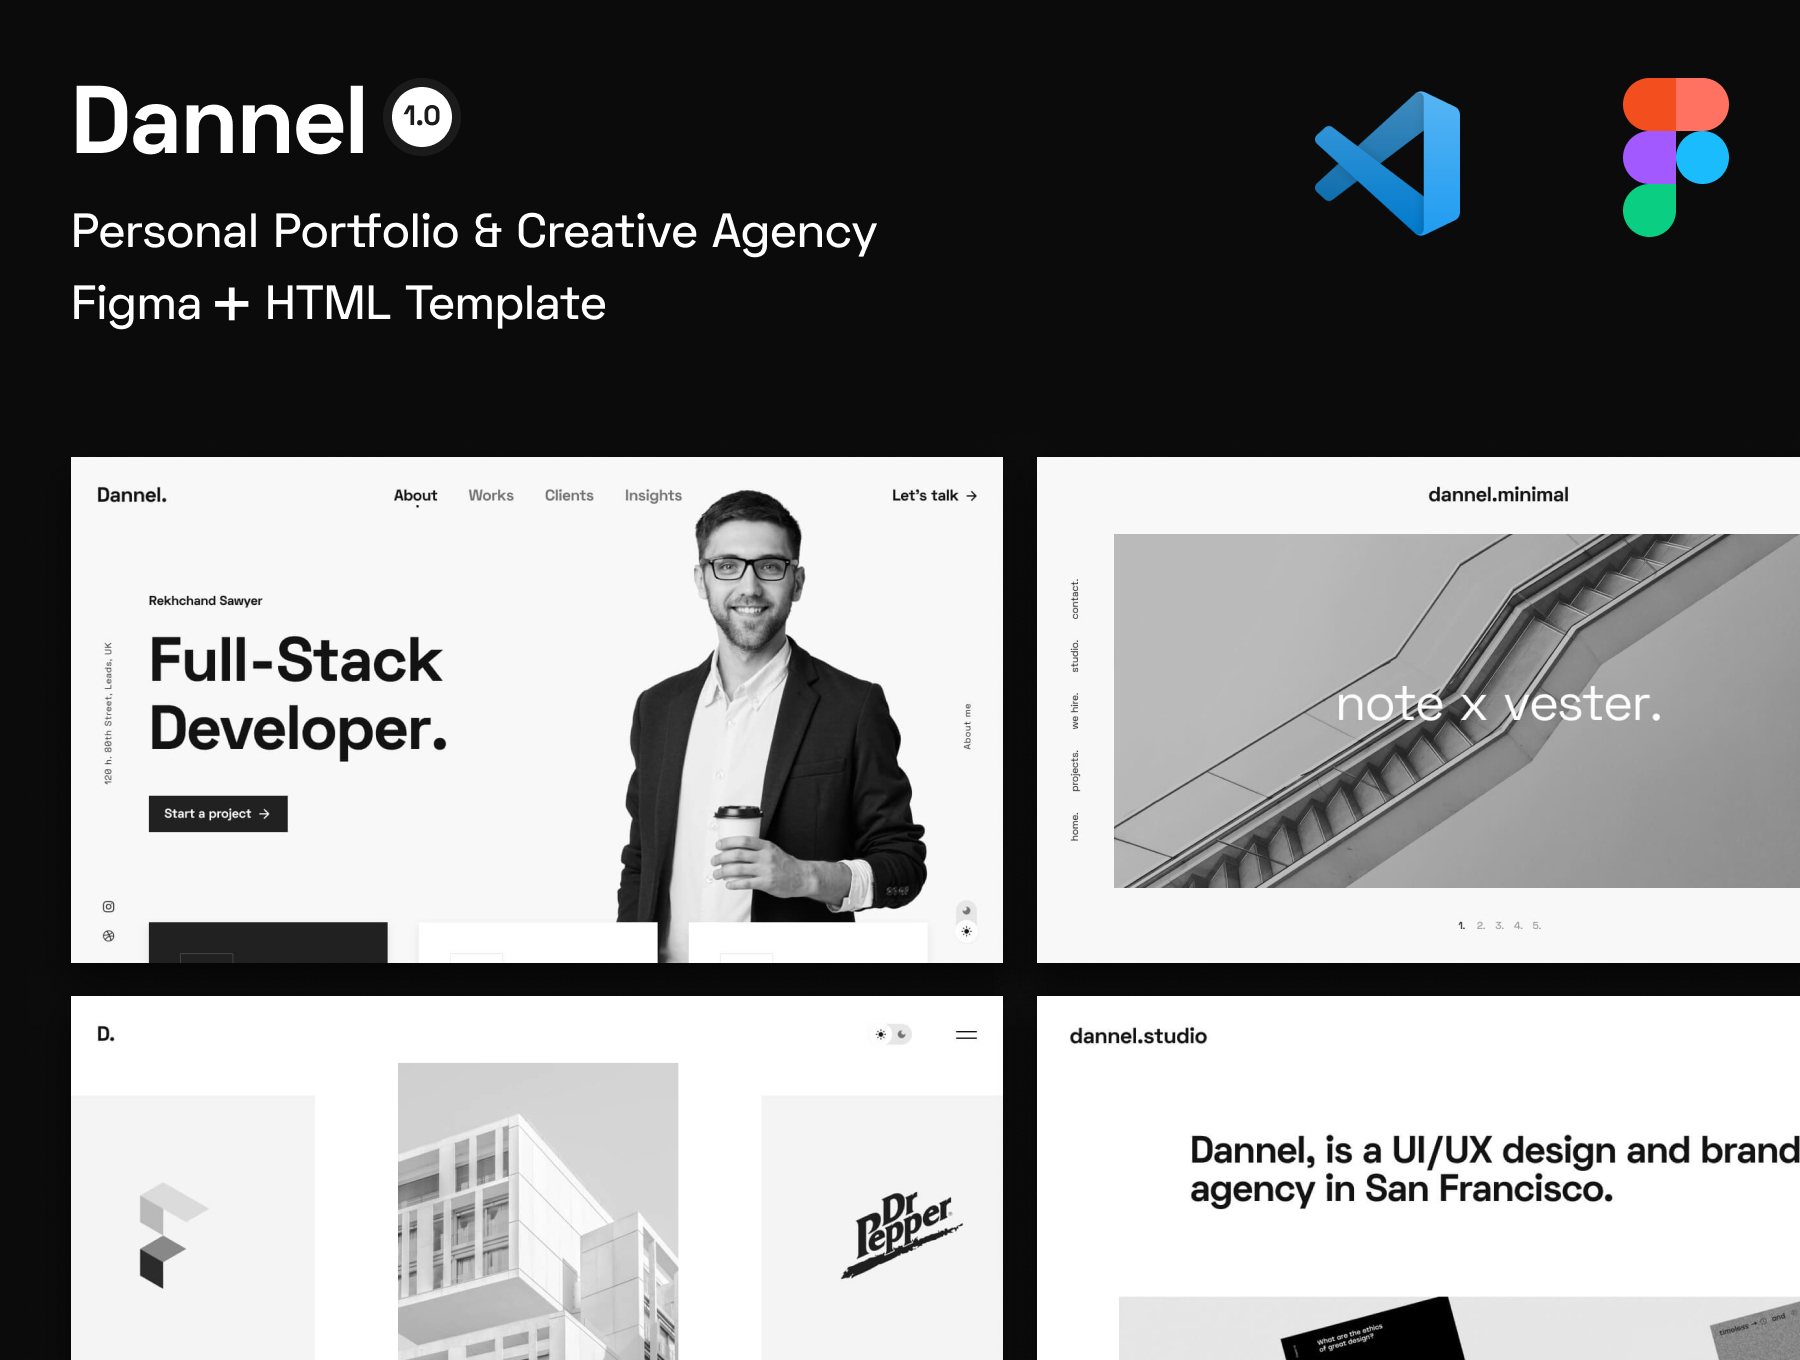 [VIP] Dannel: Personal Portfolio & Creative Agency HTML + FIGMA